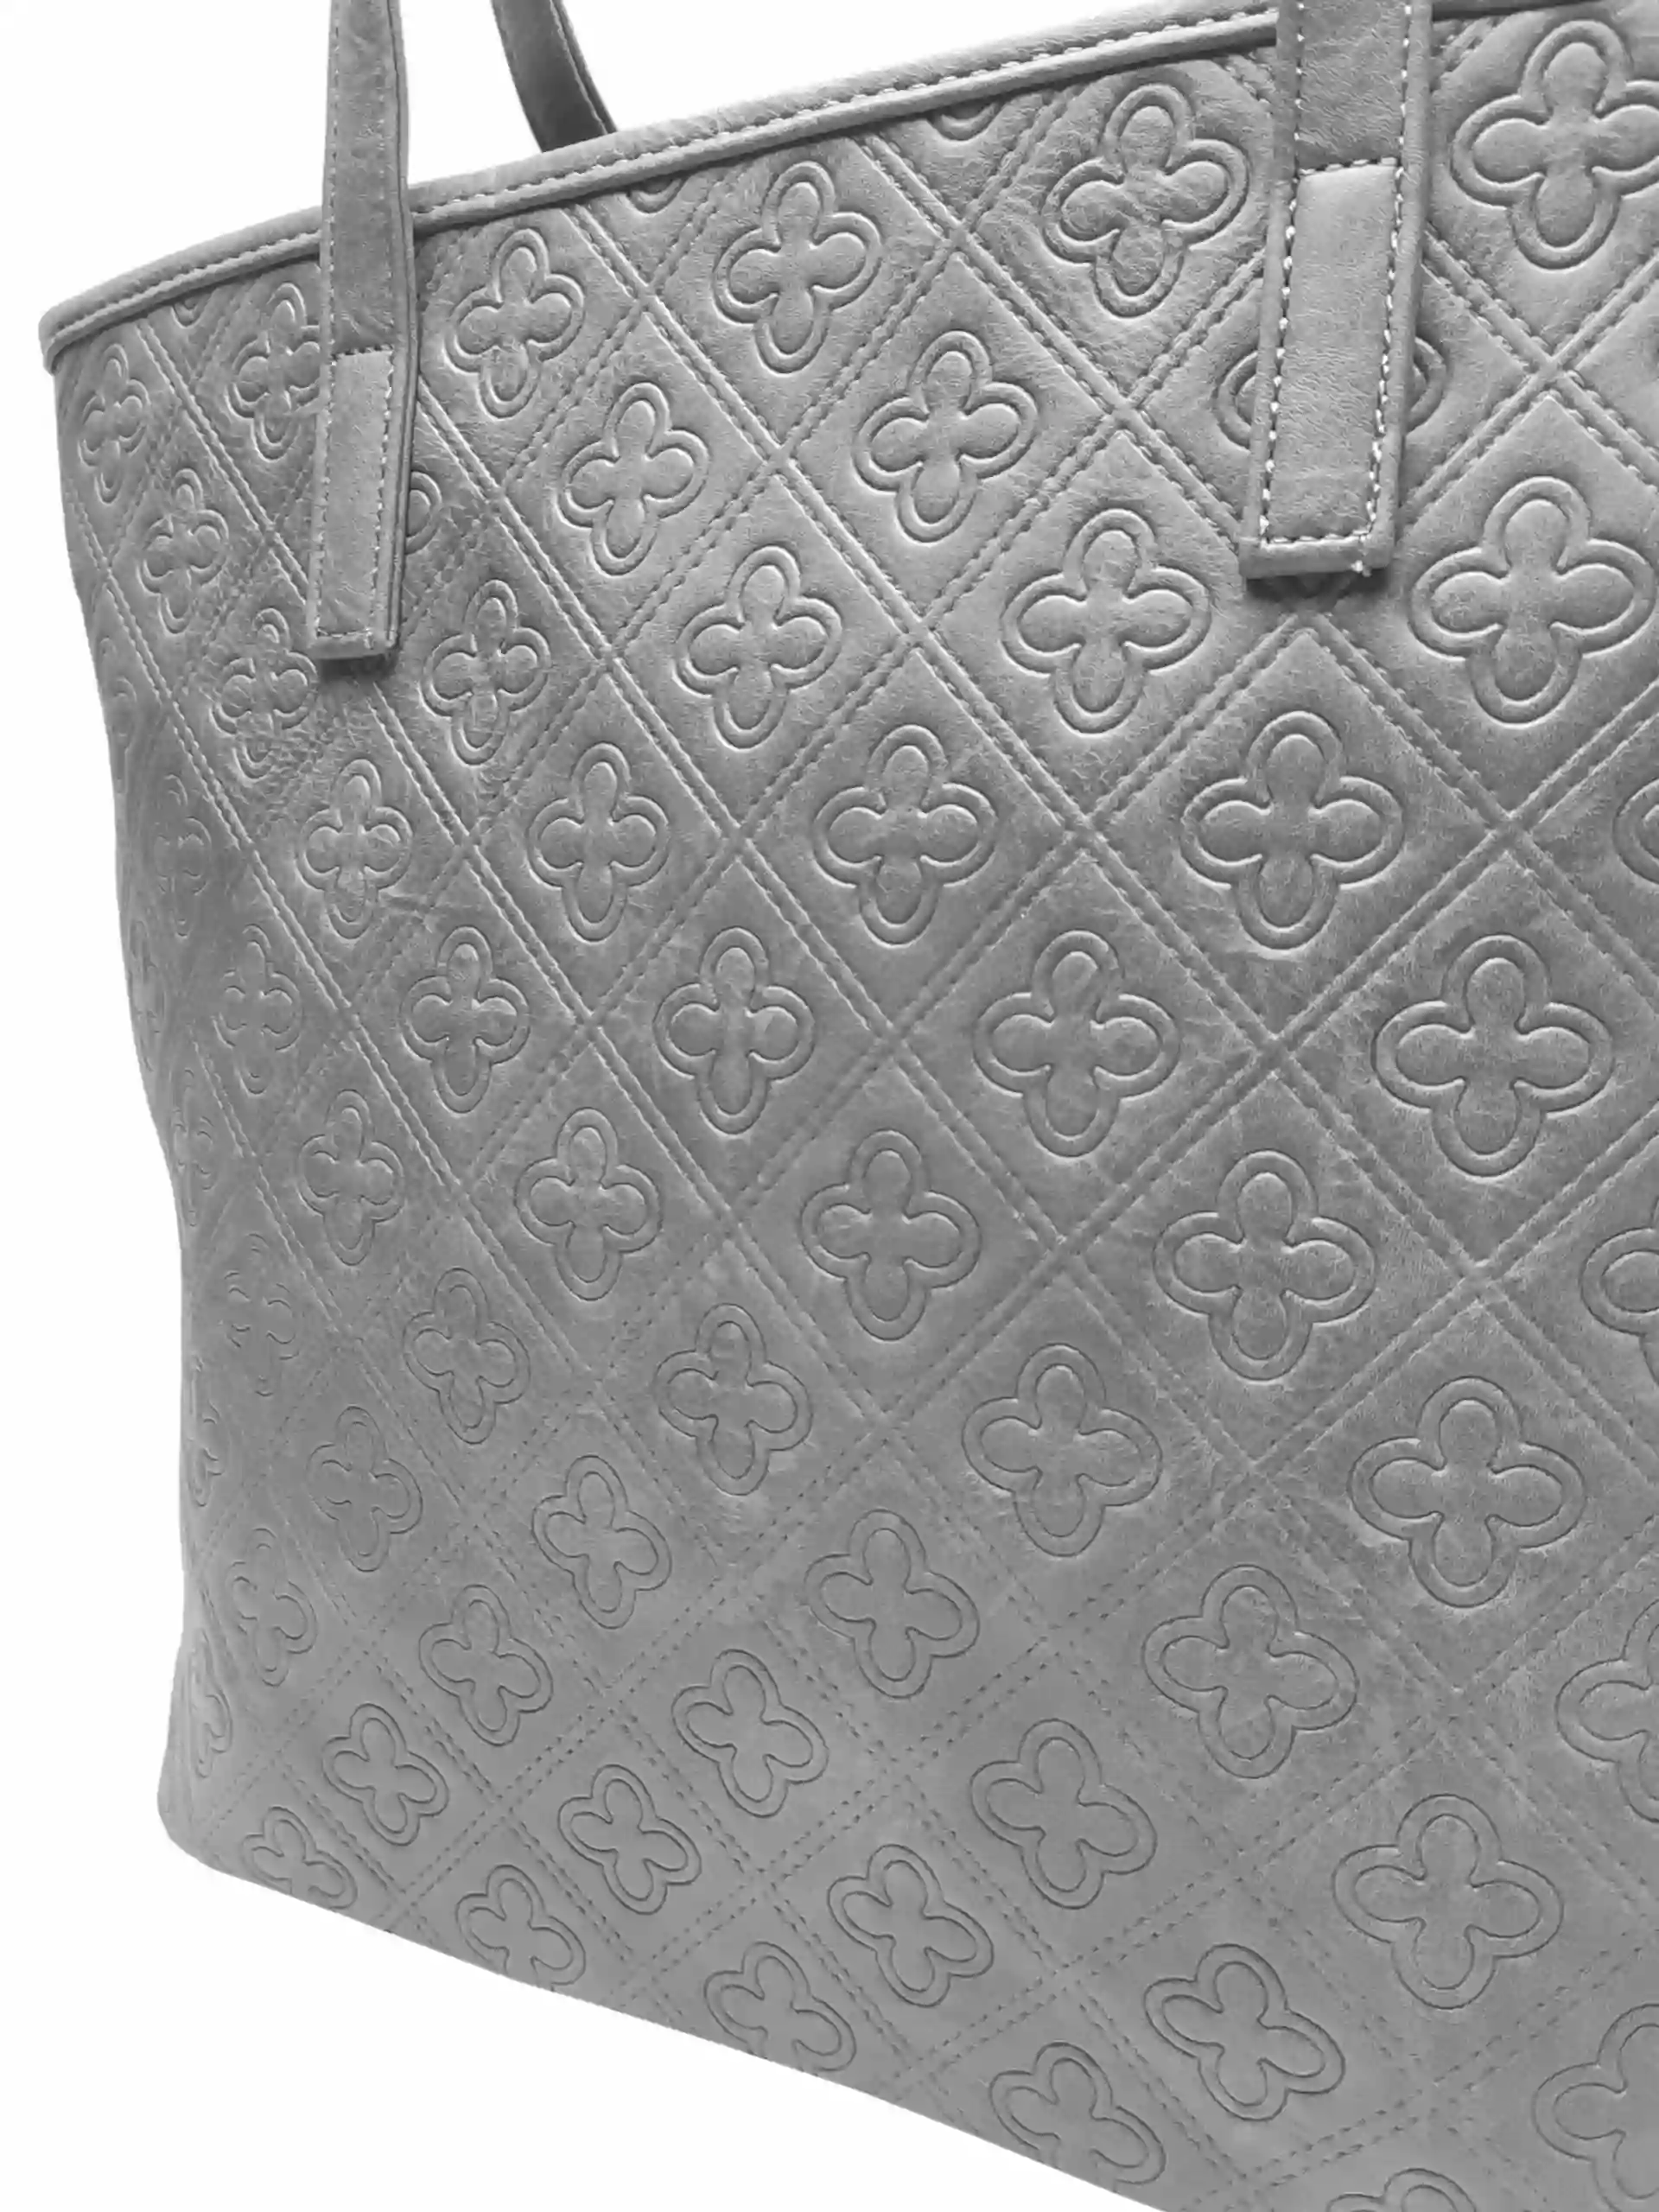 Středně šedá dámská kabelka přes rameno se vzory, Tapple, H22505, detail strany kabelky